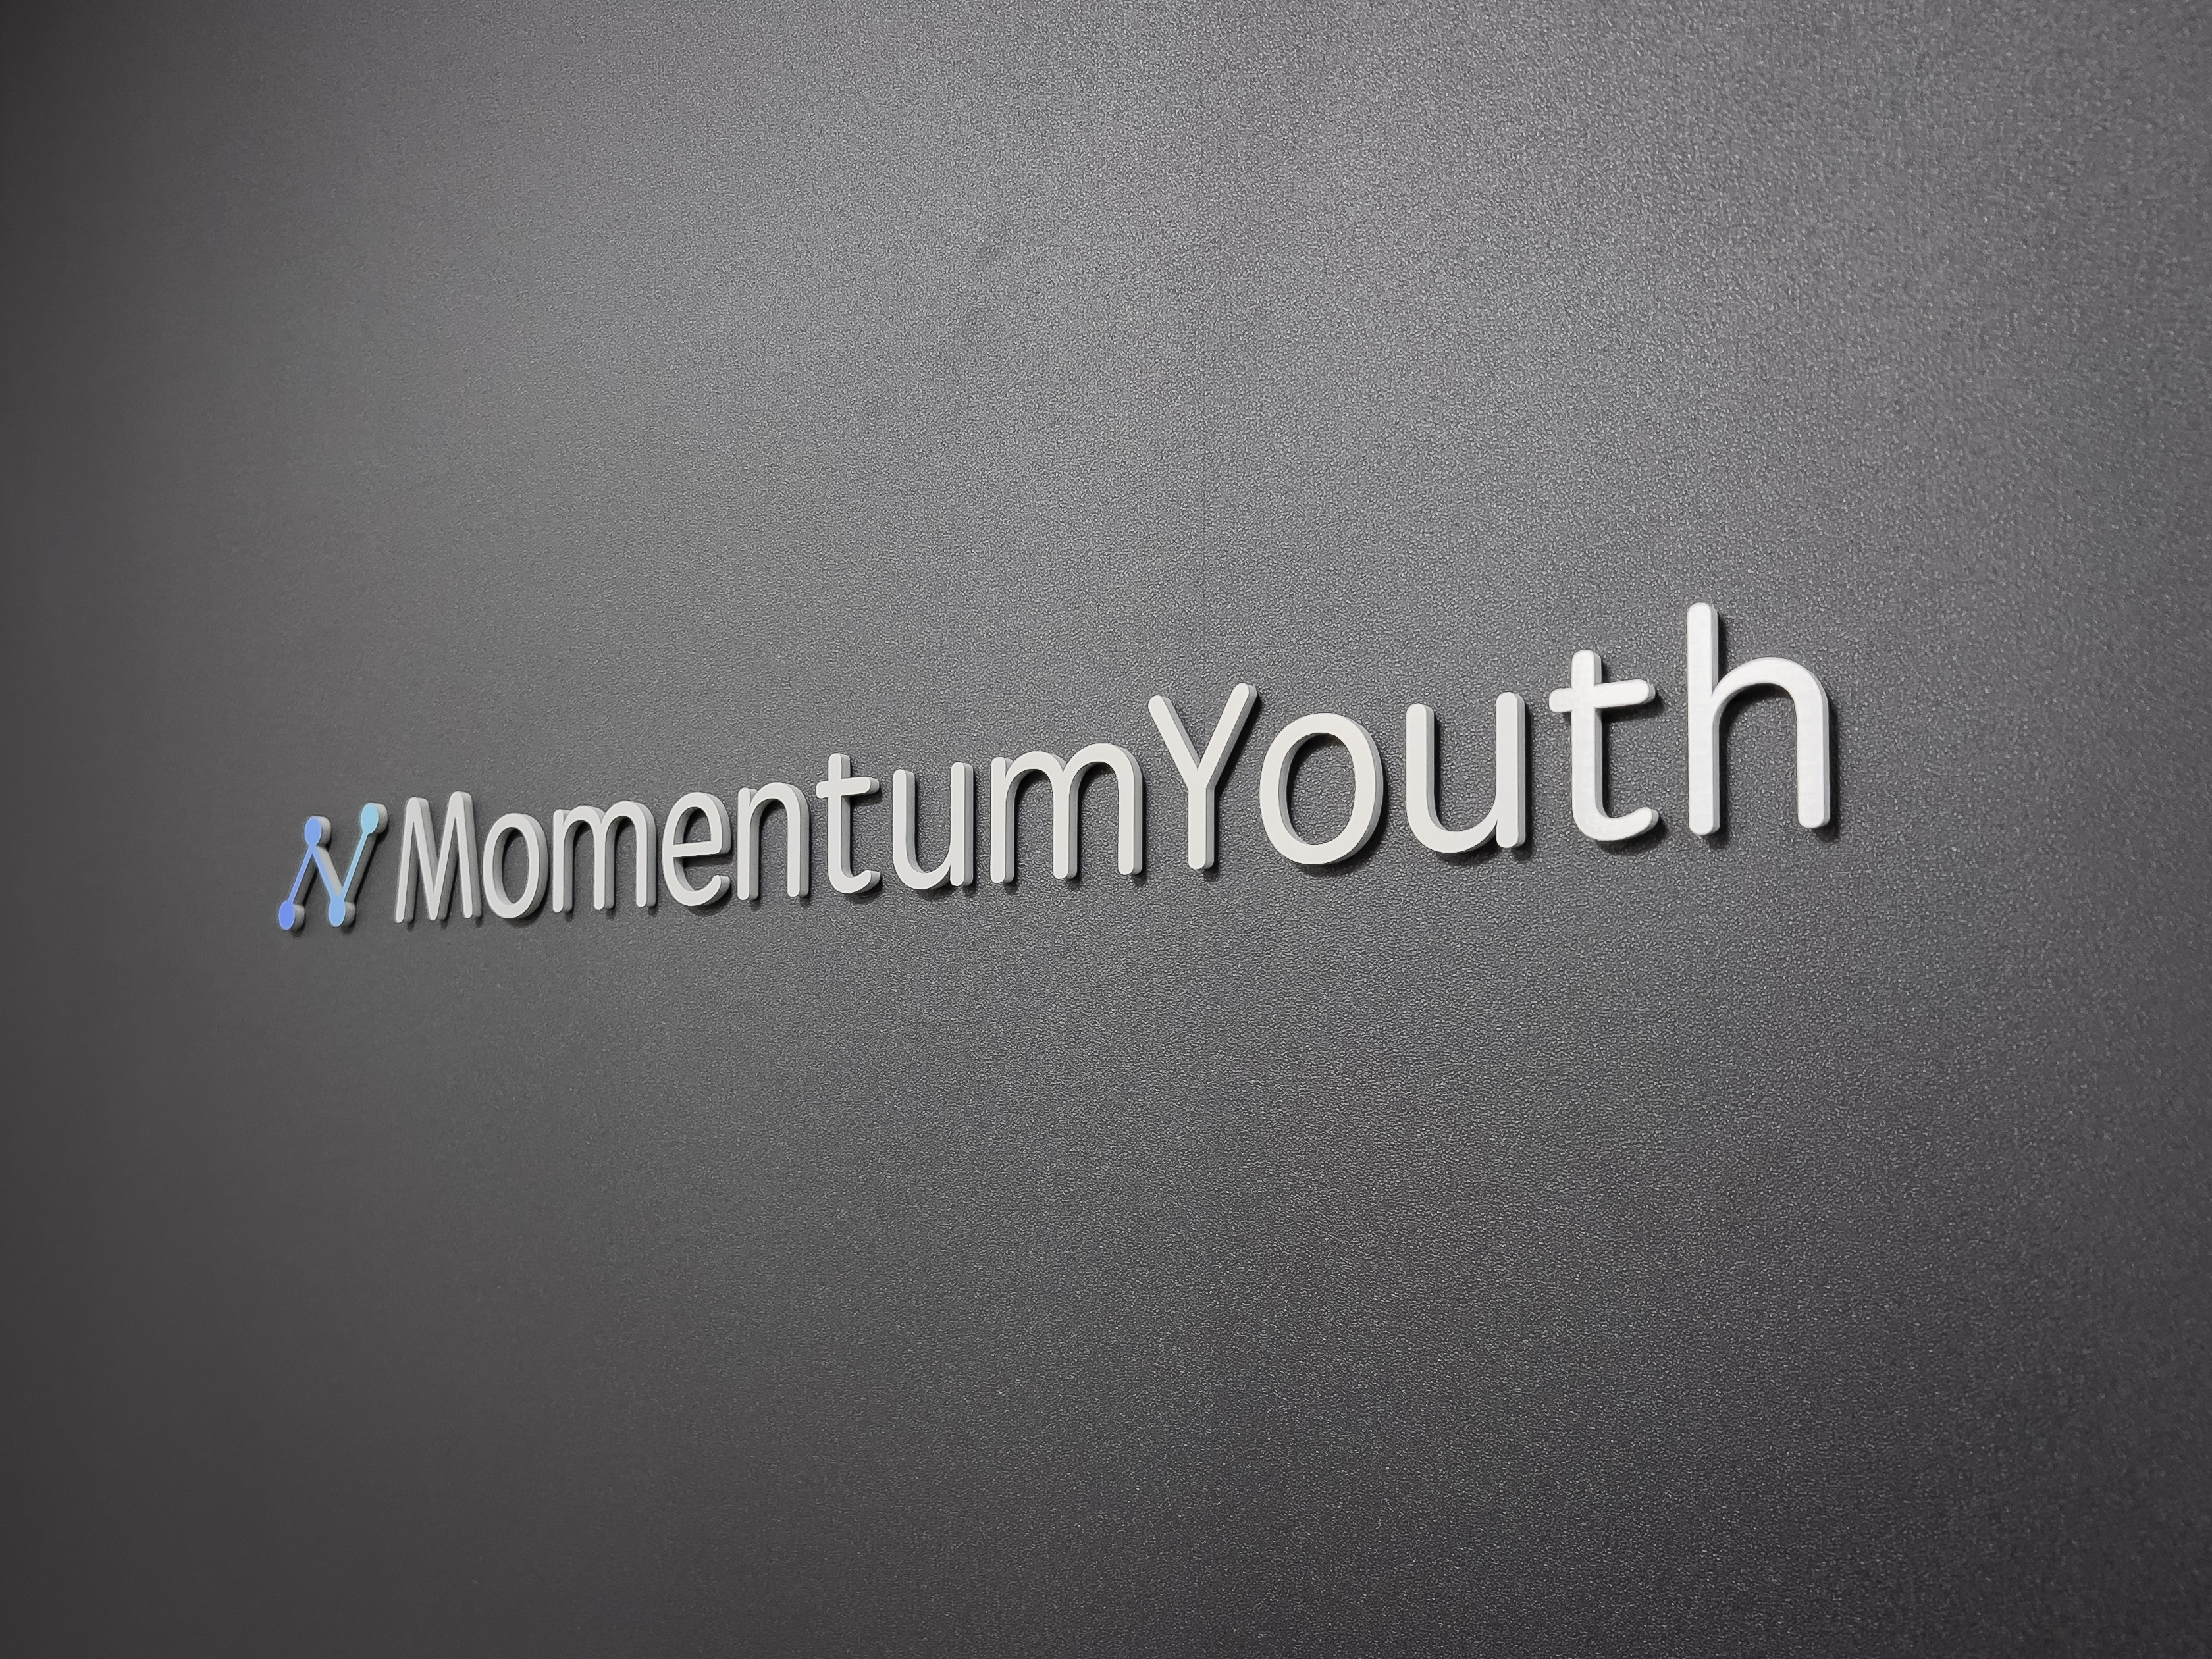 株式会社 Momentum Youthのイメージ画像1